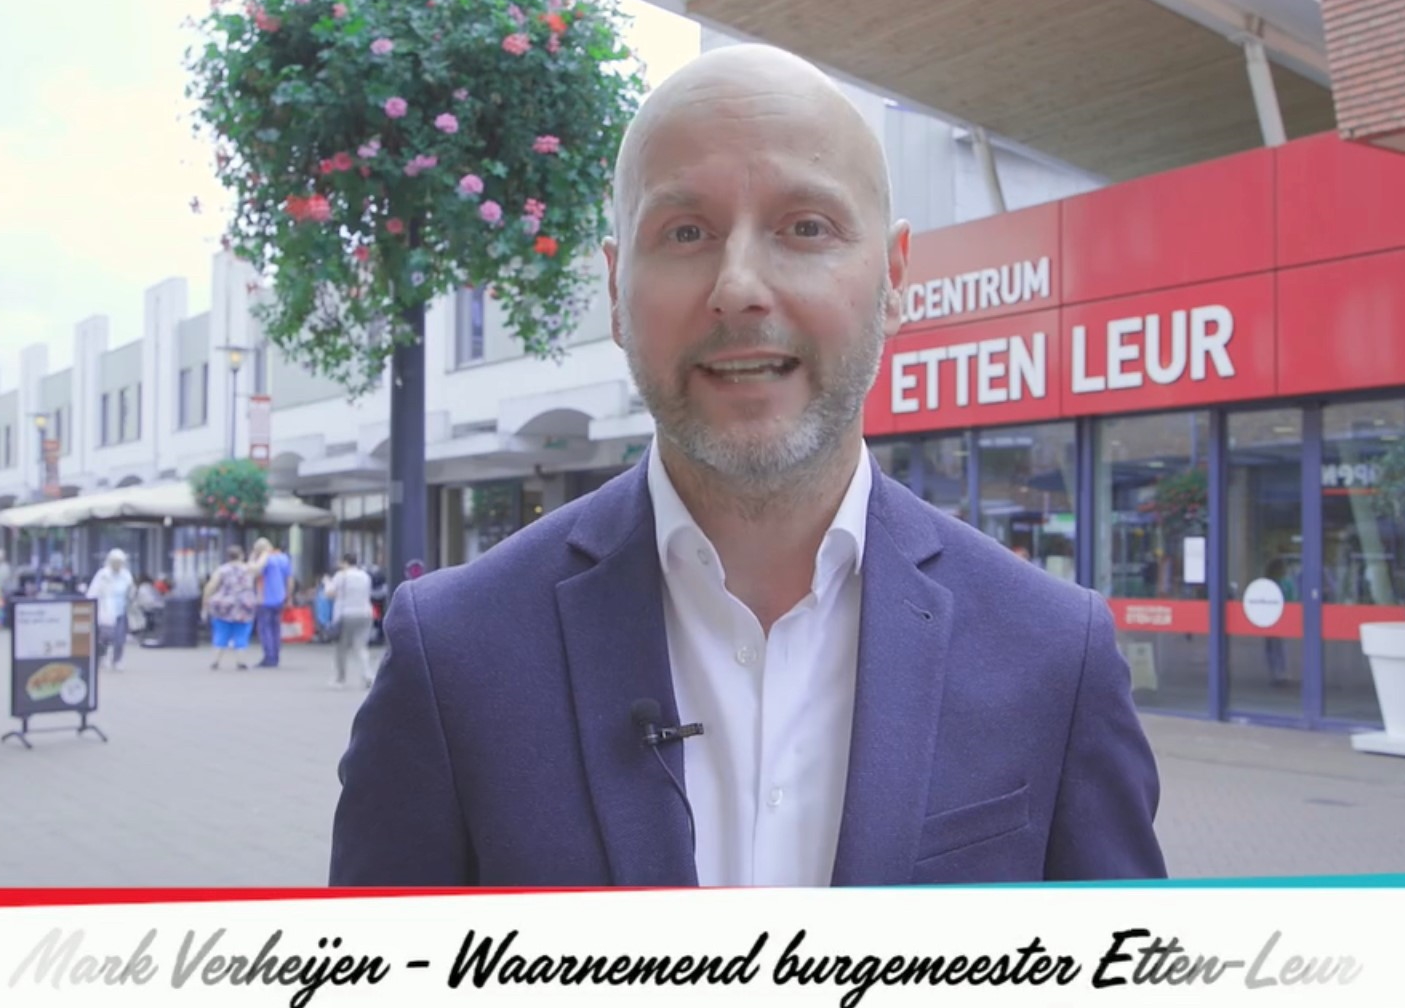 Waarnemend burgemeester Mark Verheijen in video over zijn afscheid